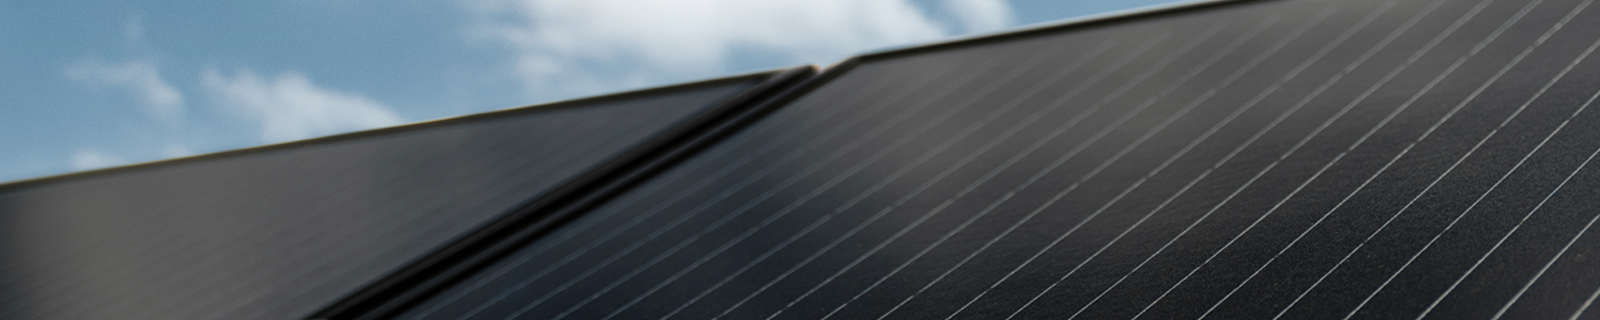 Zintegrowany dach fotowoltaiczny VARIO to doskonałe rozwiązanie dla nowoczesnego domu